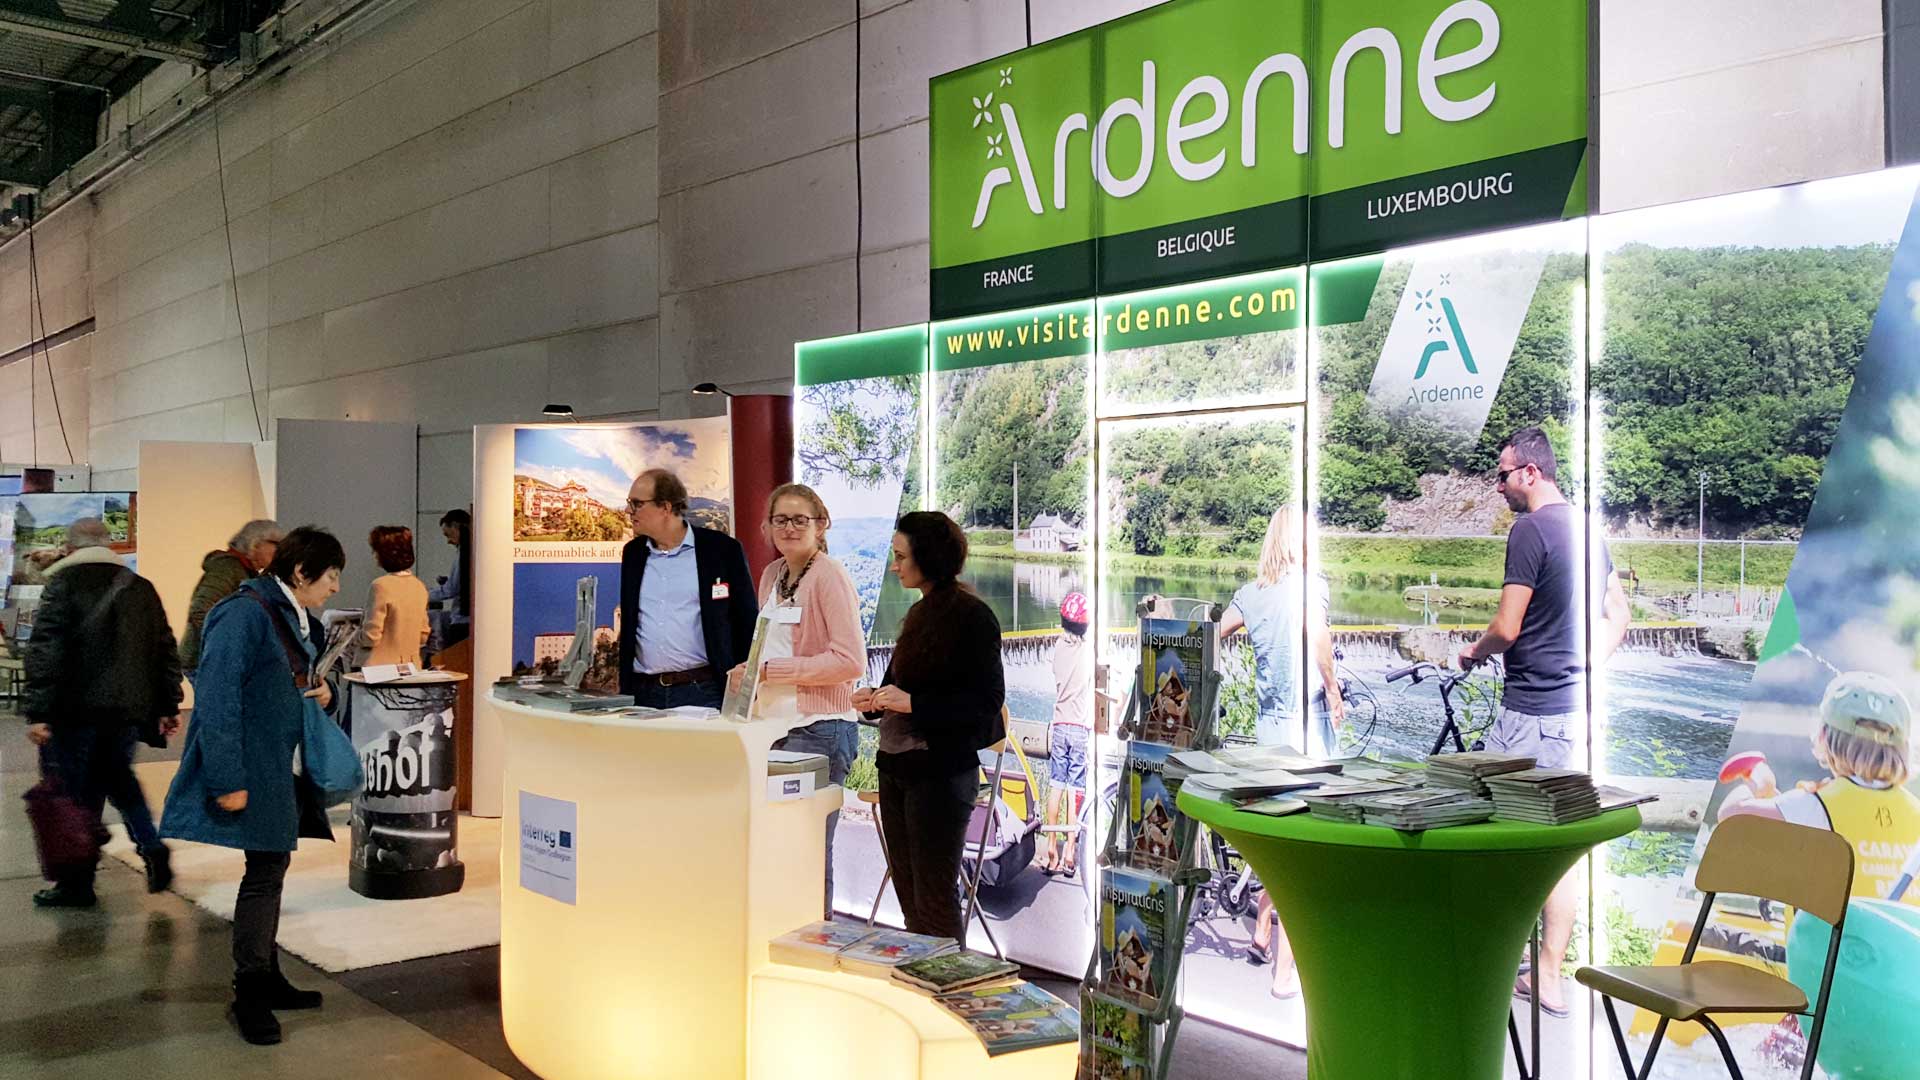 La marque Ardenne au Salon Vazkanz au Luxembourg en 2018